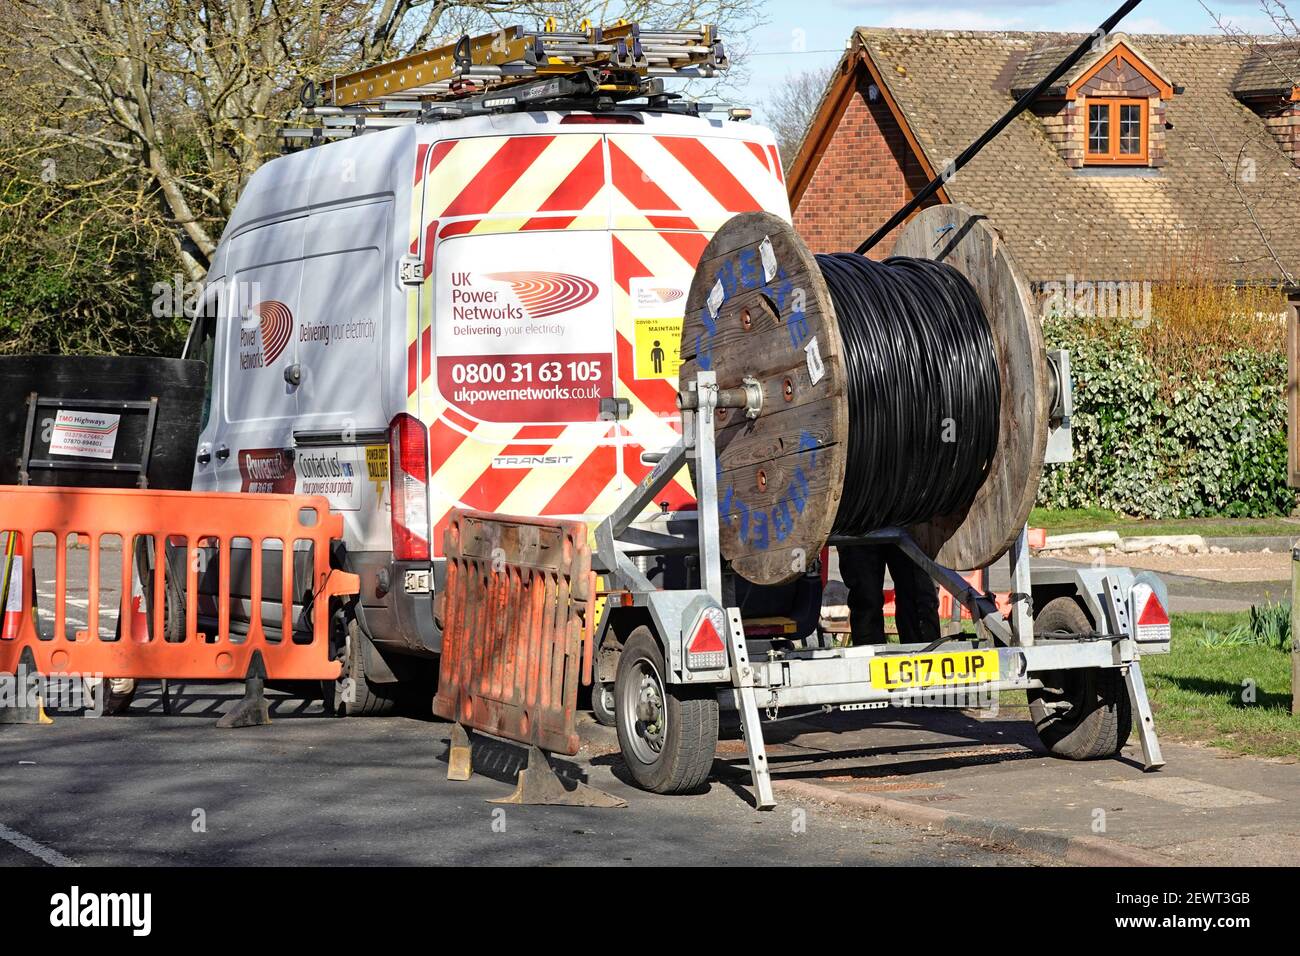 UK Power Networks distribuzione business van & cable drum trailer Sostituzione rete elettrica cavi overhead fornitura villaggio sede Essex Inghilterra Foto Stock